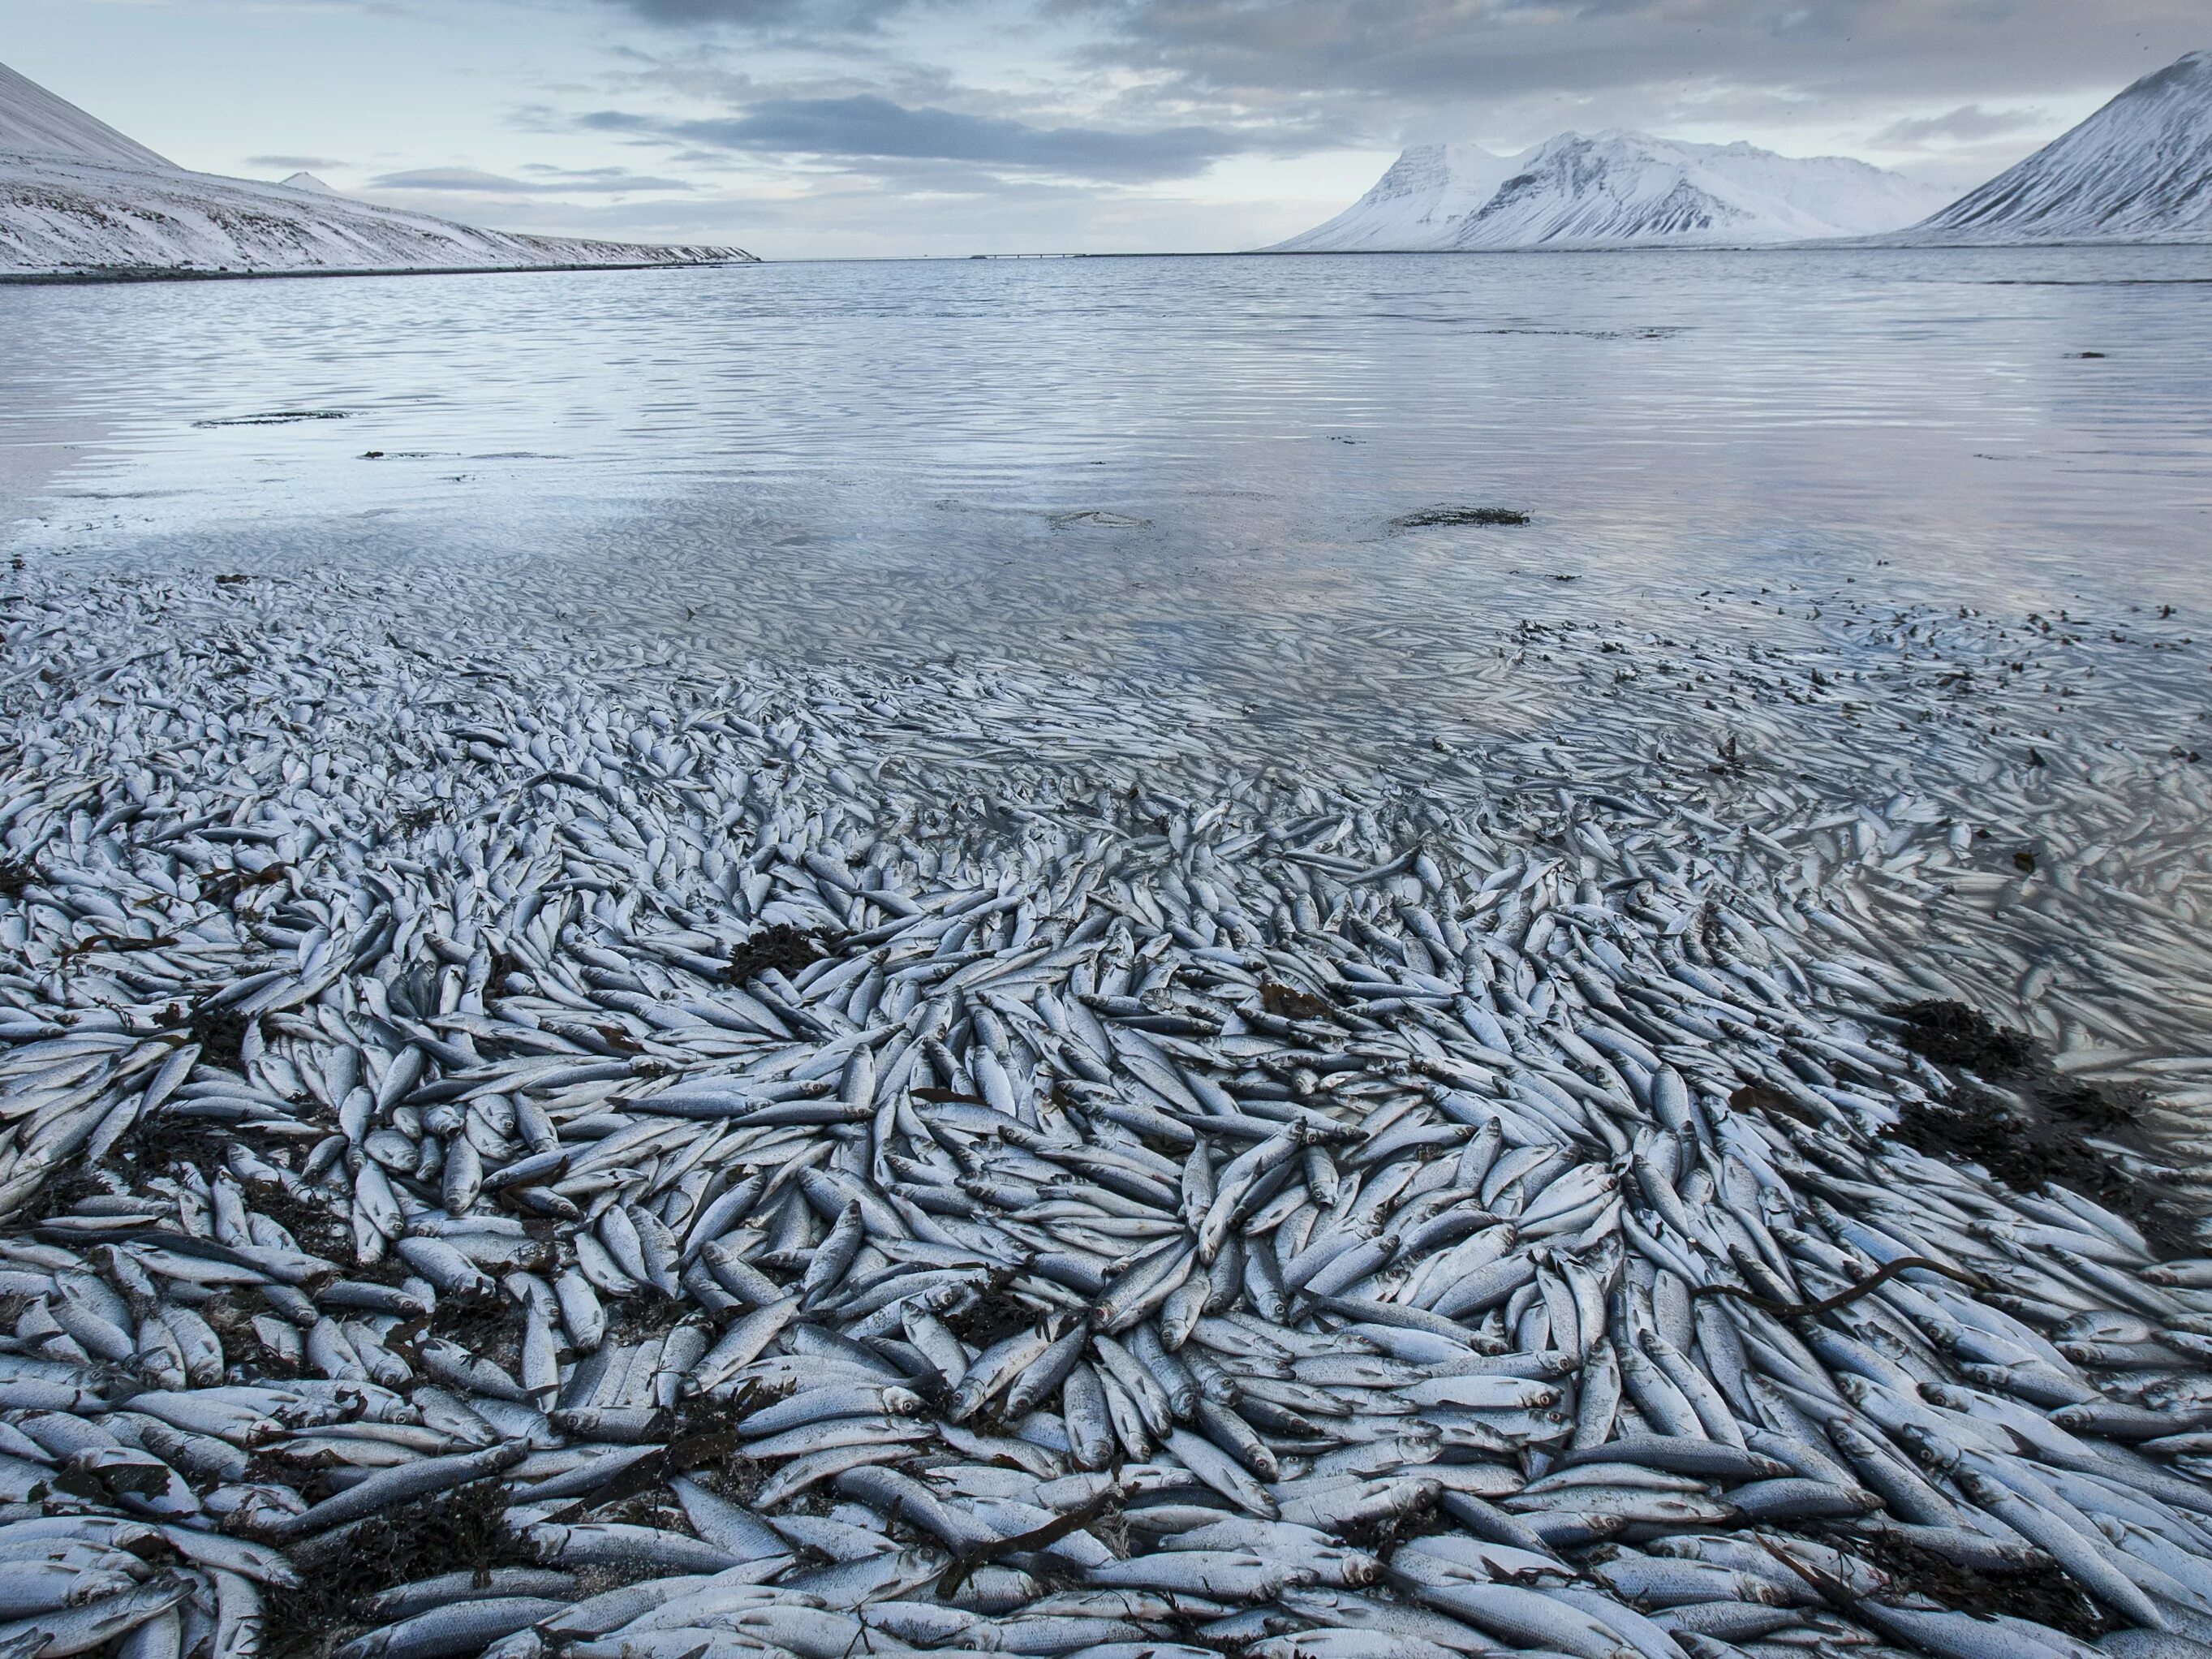 Мертвая ловля. Сельдь Северного Ледовитого океана. Рыбная промышленность Исландии. Рыбный промысел в Северном Ледовитом океане. Исландия рыболовство промысел.